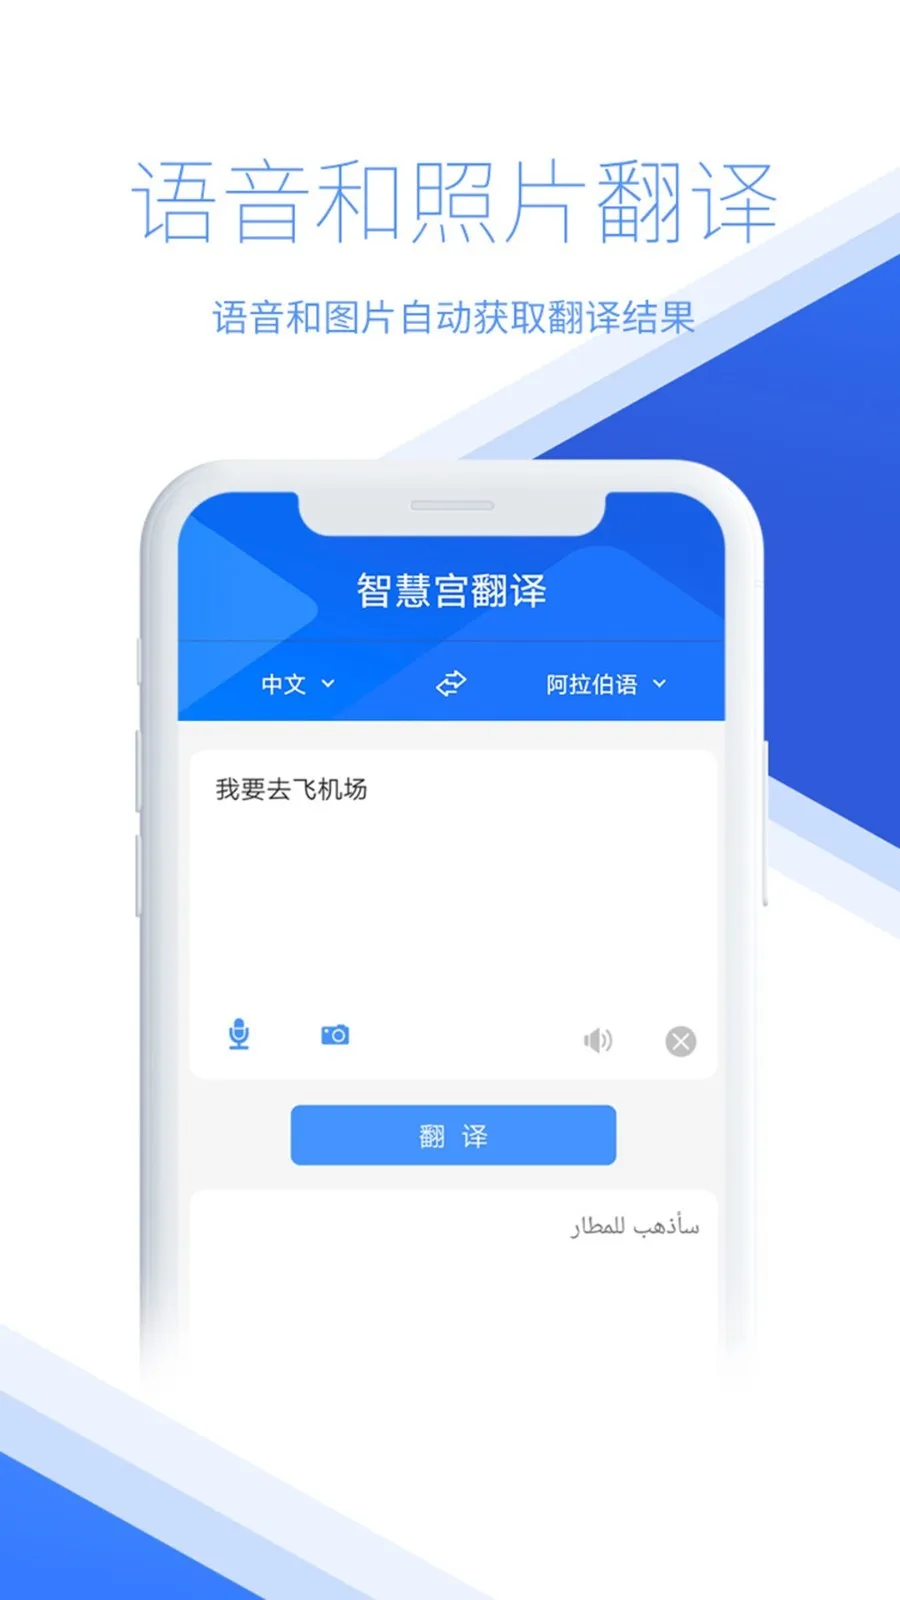 广西话翻译普通话软件哪个好 广西话翻译普通话软件app分享